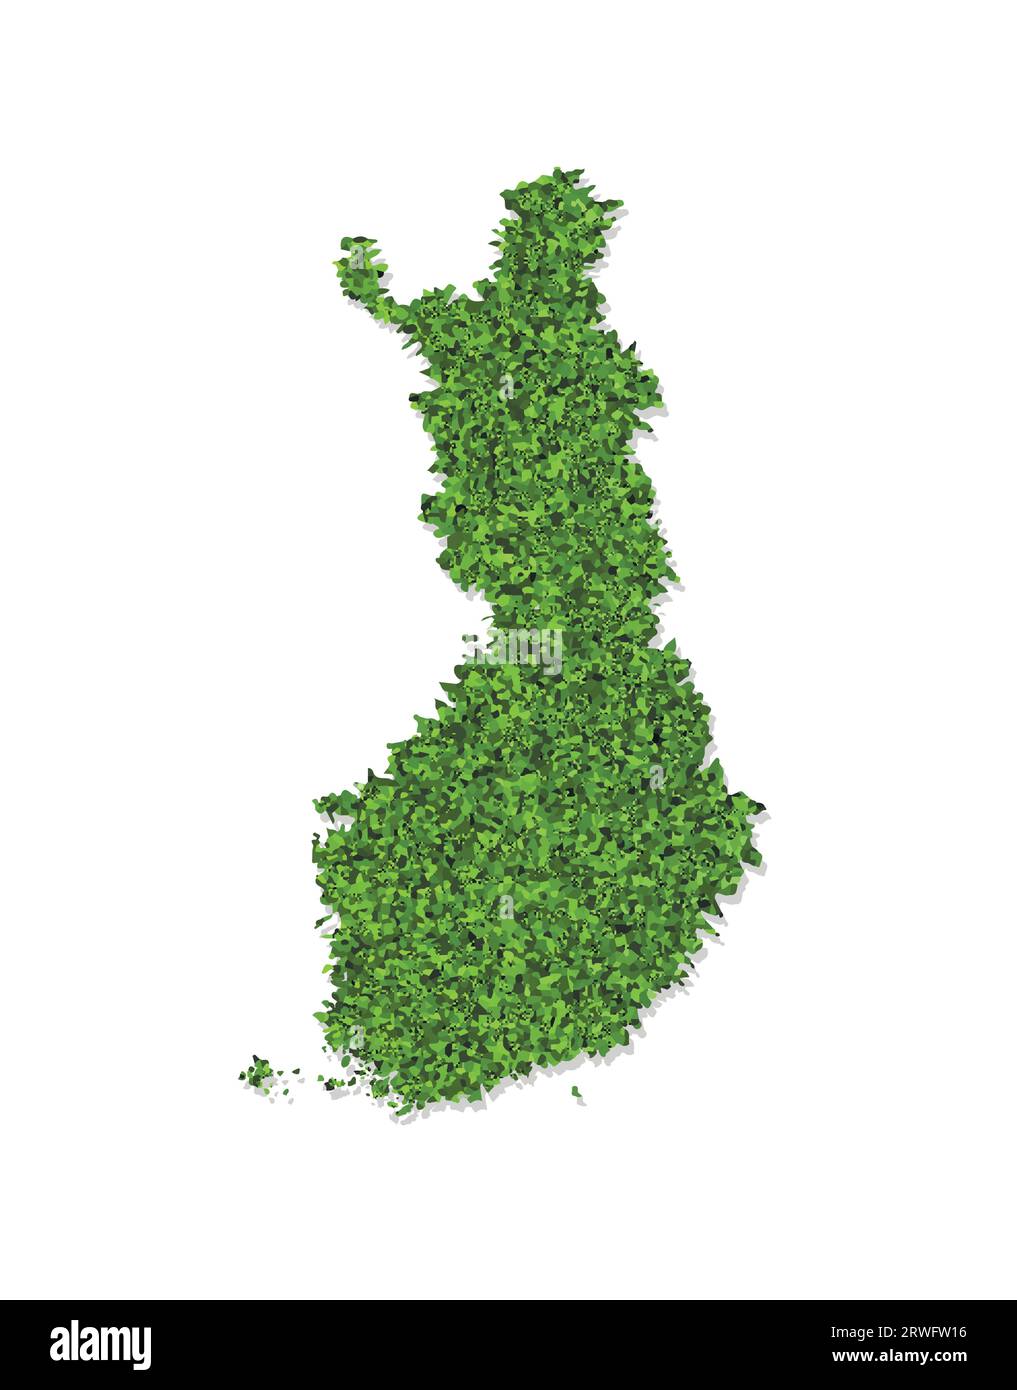 Icona di illustrazione semplificata isolata vettoriale con sagoma verde erbosa della mappa finlandese. Sfondo bianco Illustrazione Vettoriale